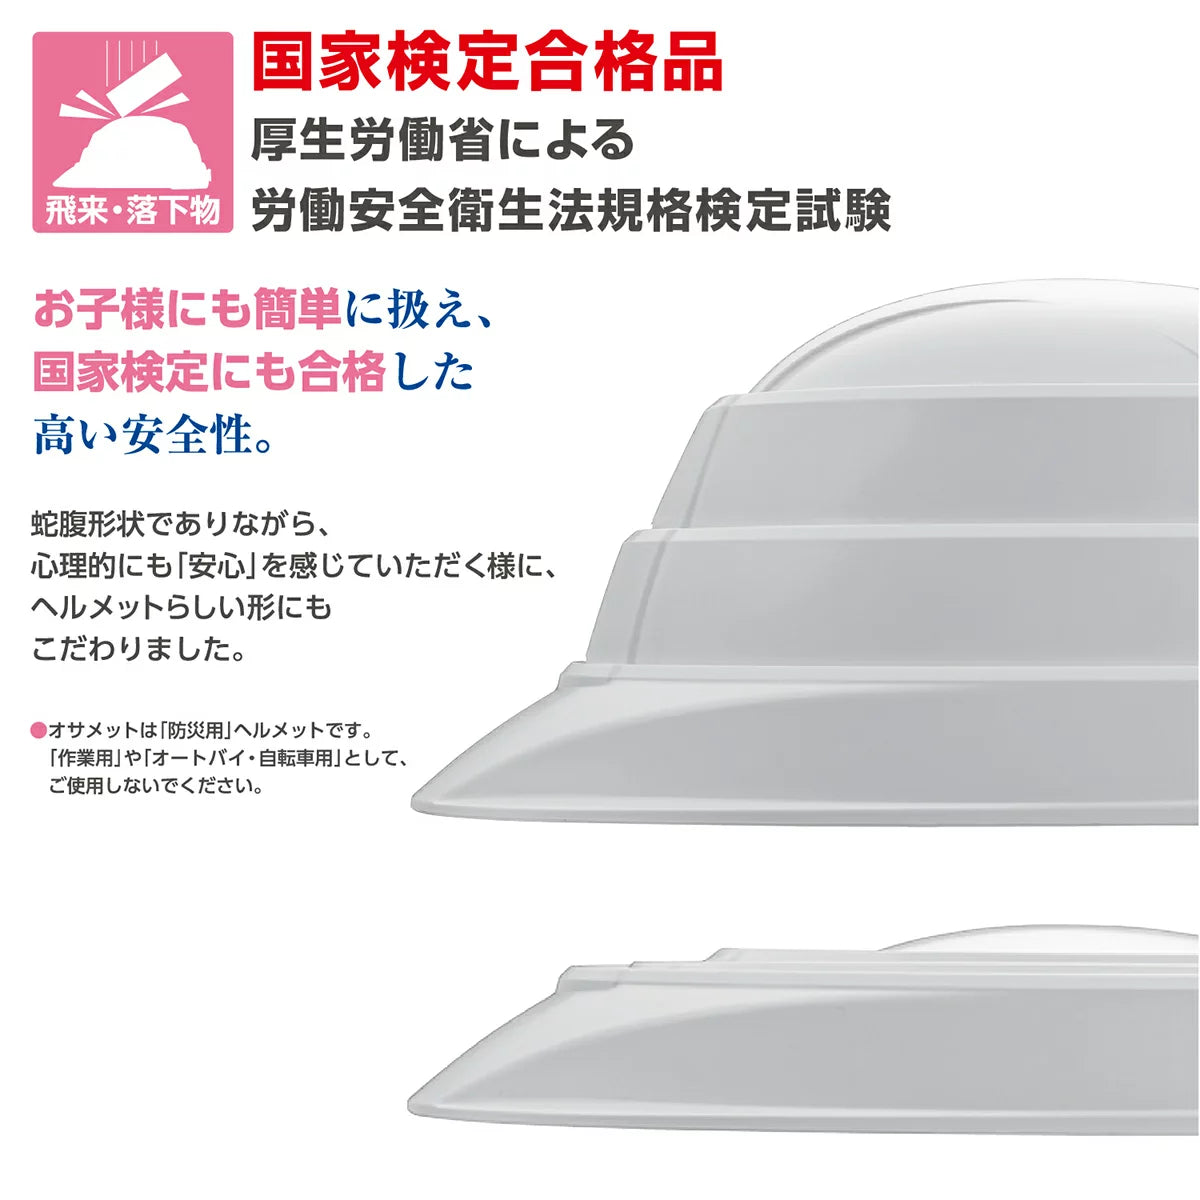 加賀産業 オサメット(KGO-1) 20個